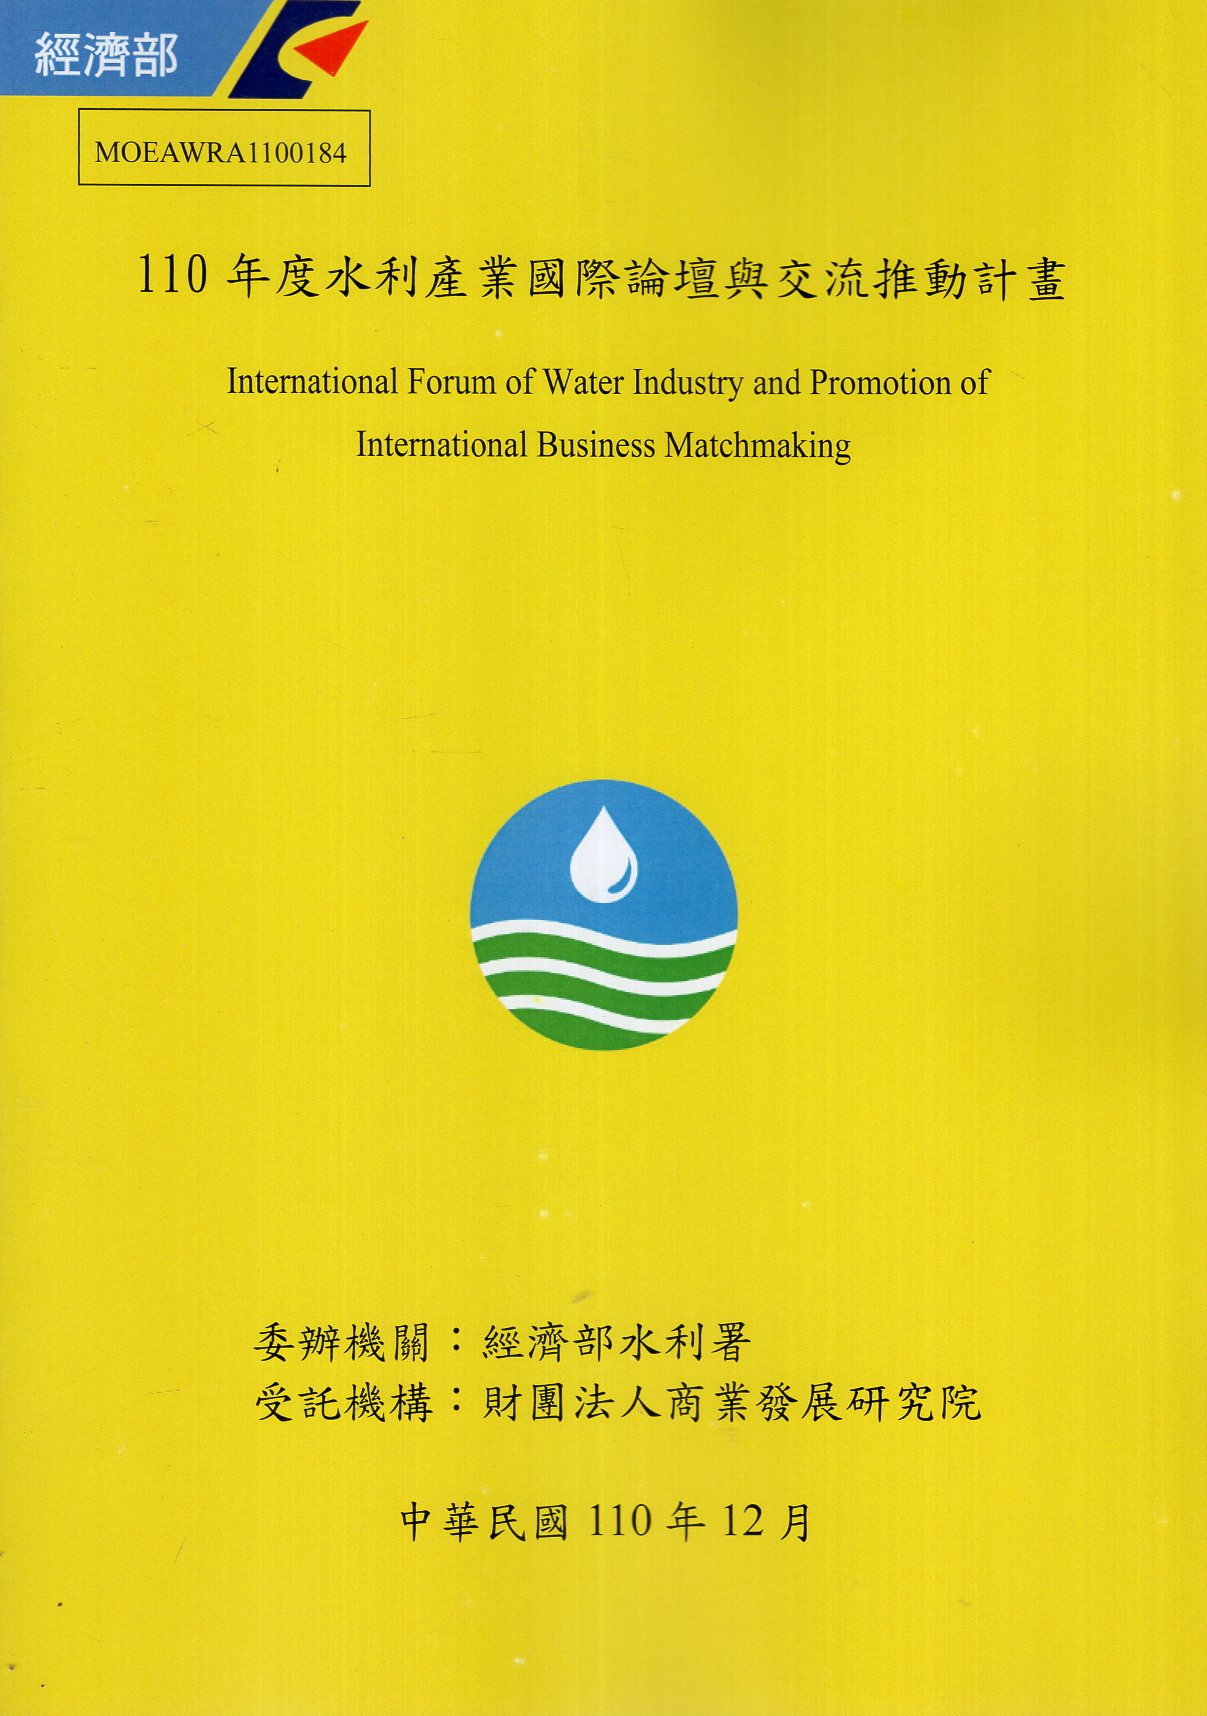 110年度水利產業國際論壇與交流推動計畫